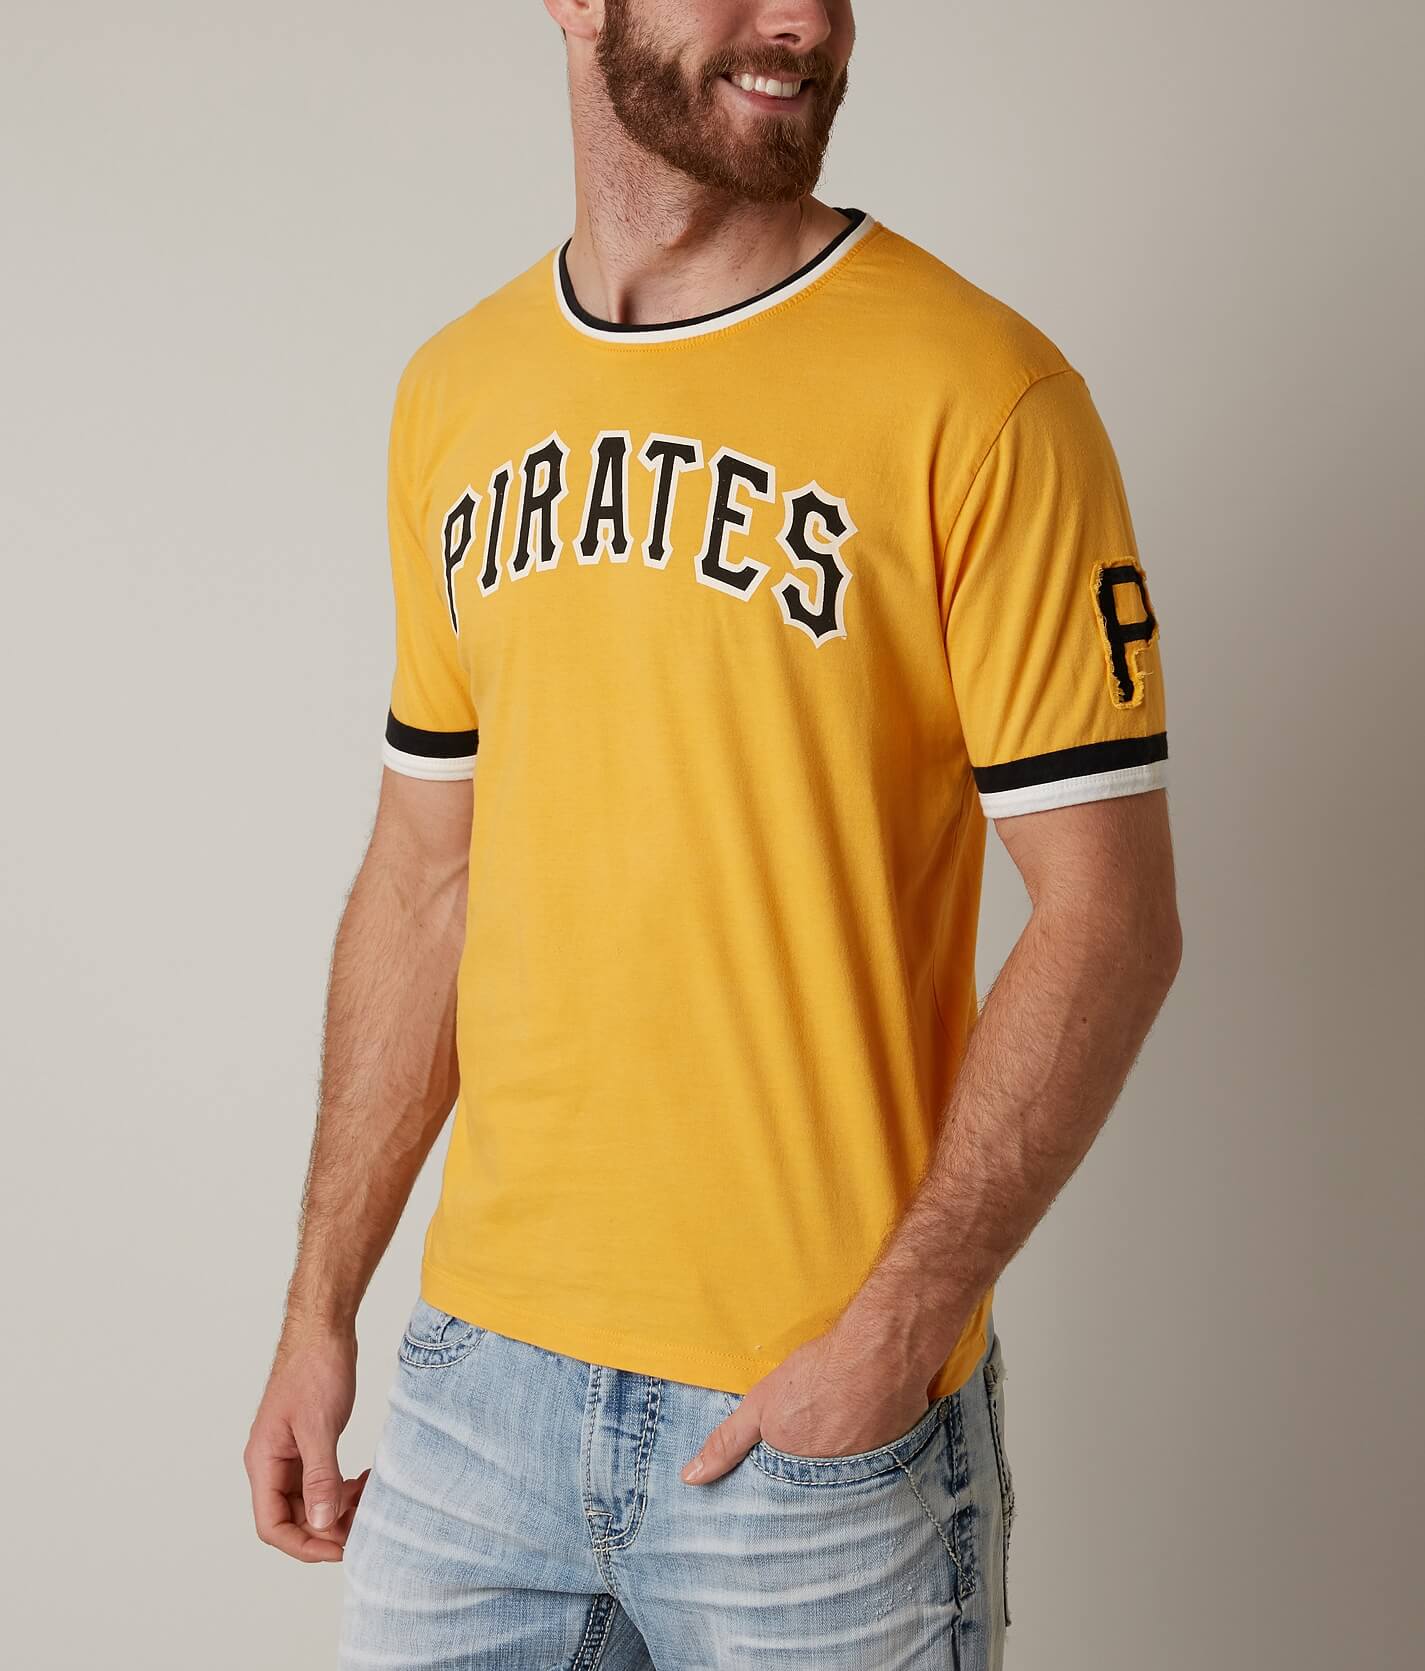 yellow pittsburgh pirates t shirt